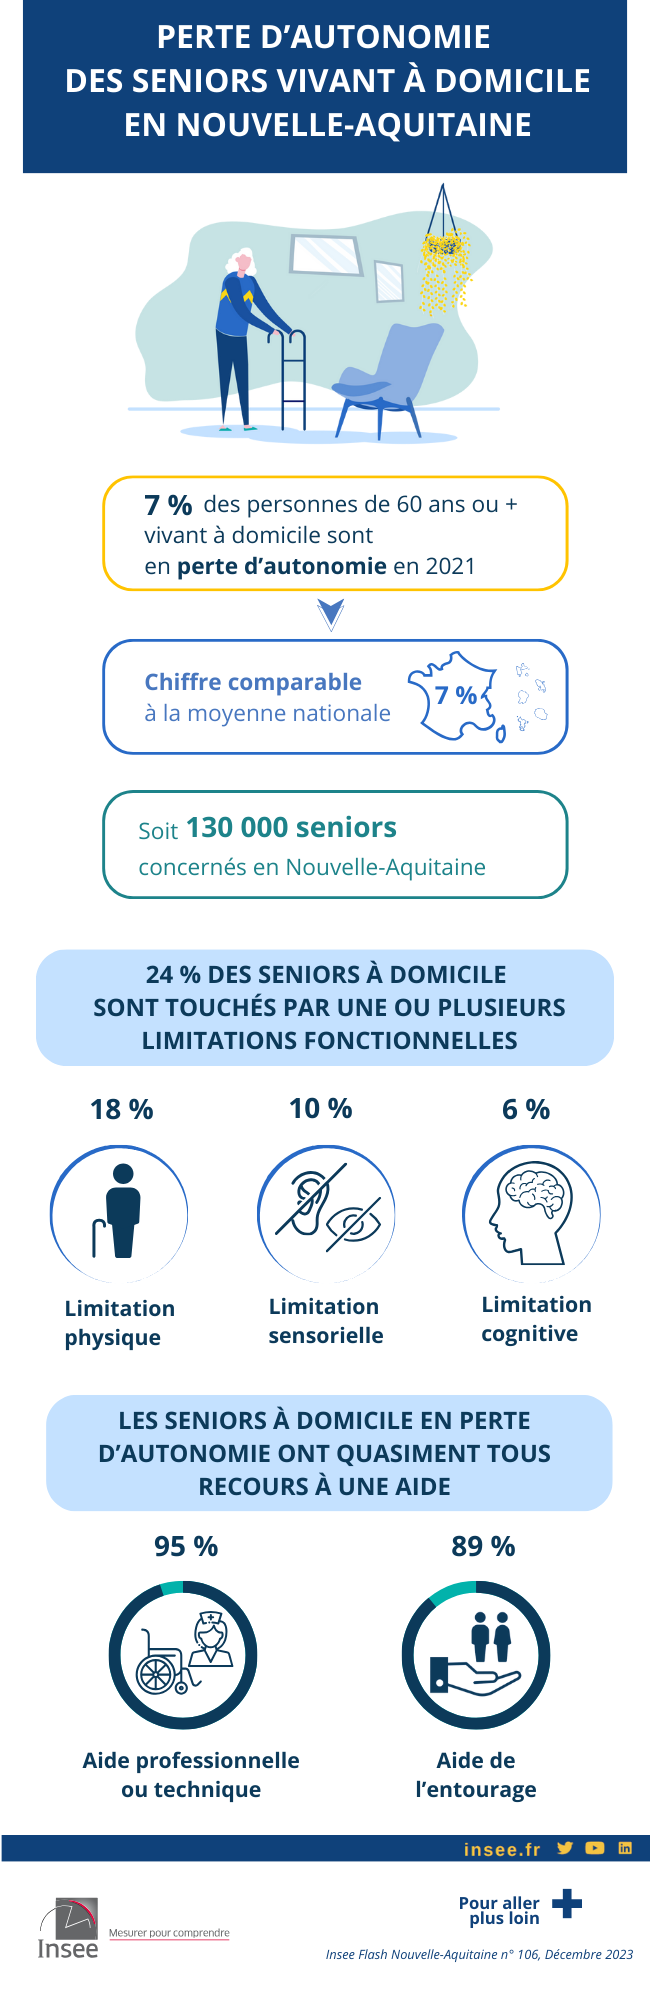 Infographie sur le perte d’autonomie des seniors en Nouvelle-Aquitains